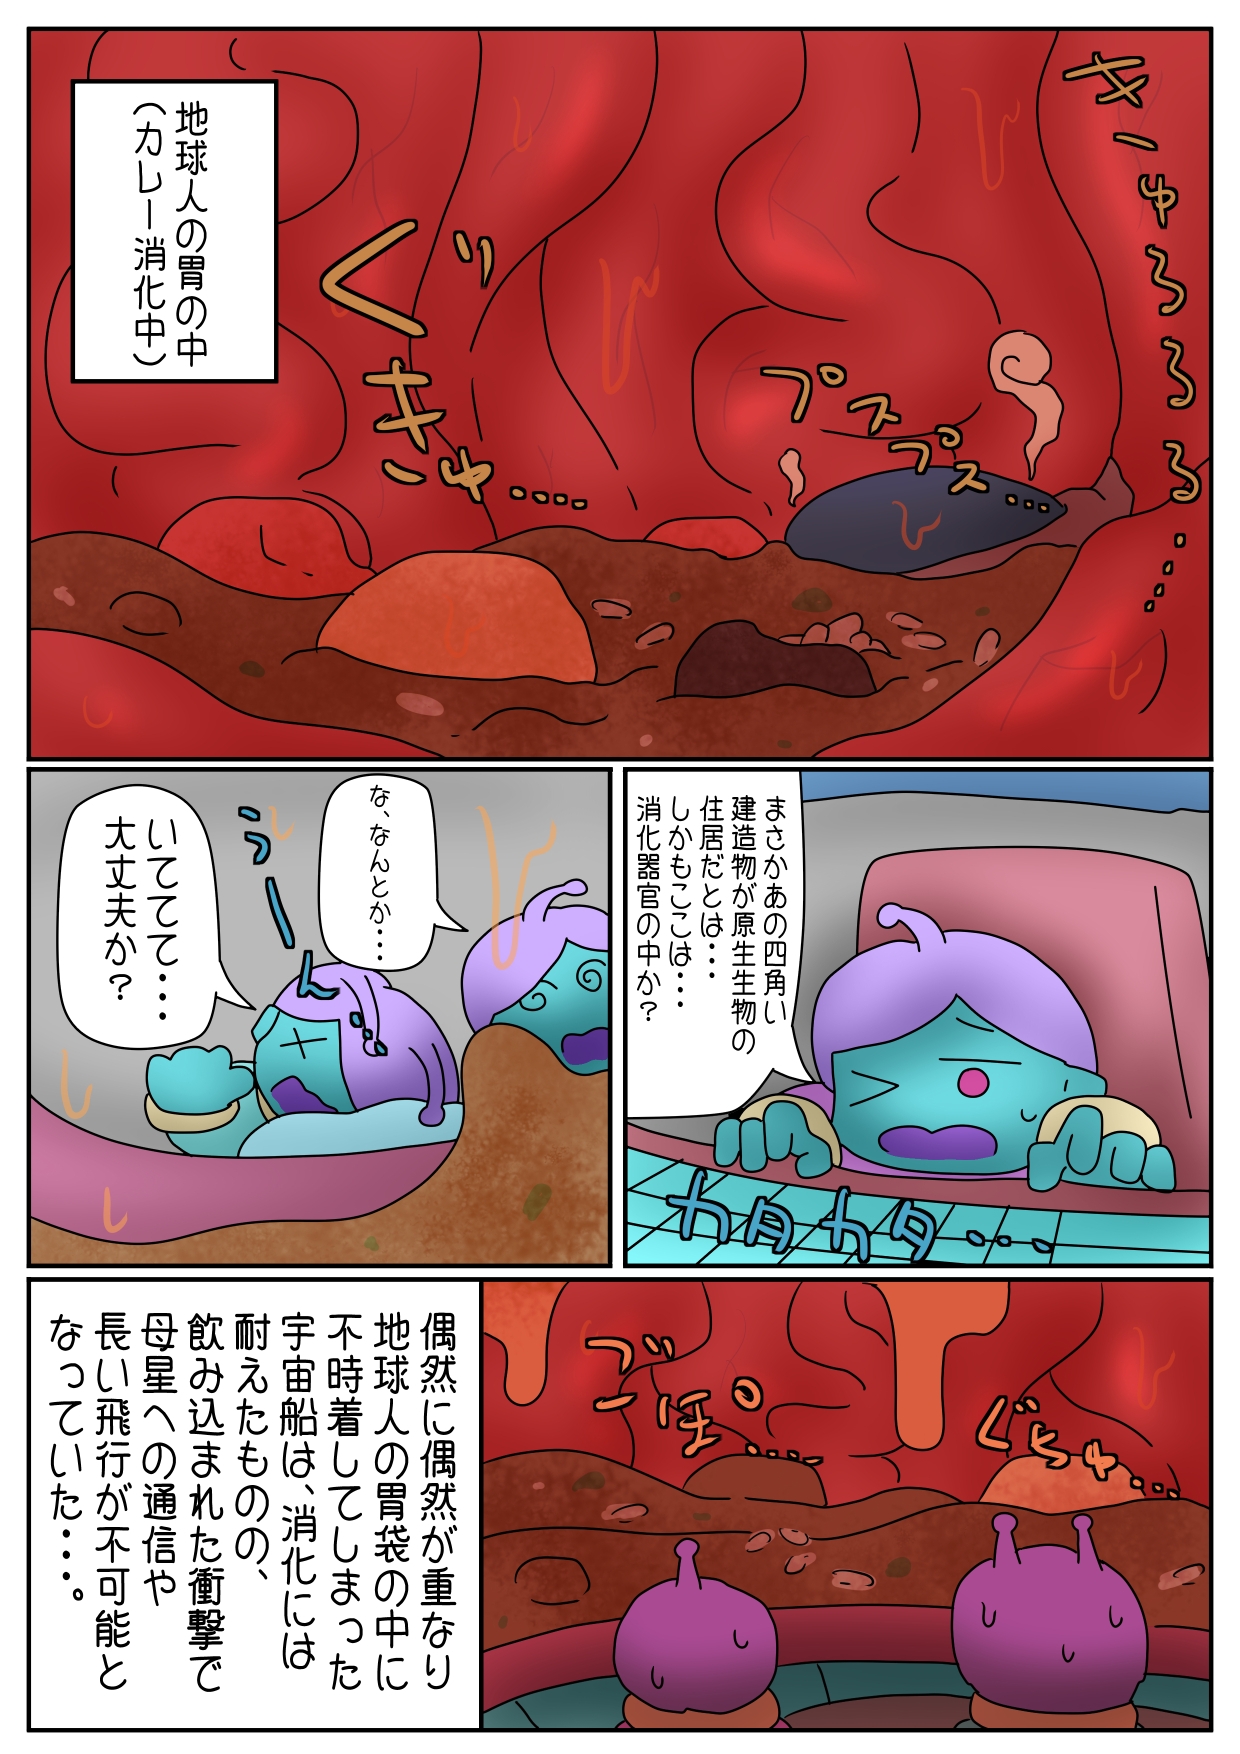 丸吞み・排泄系SF漫画まとめ3